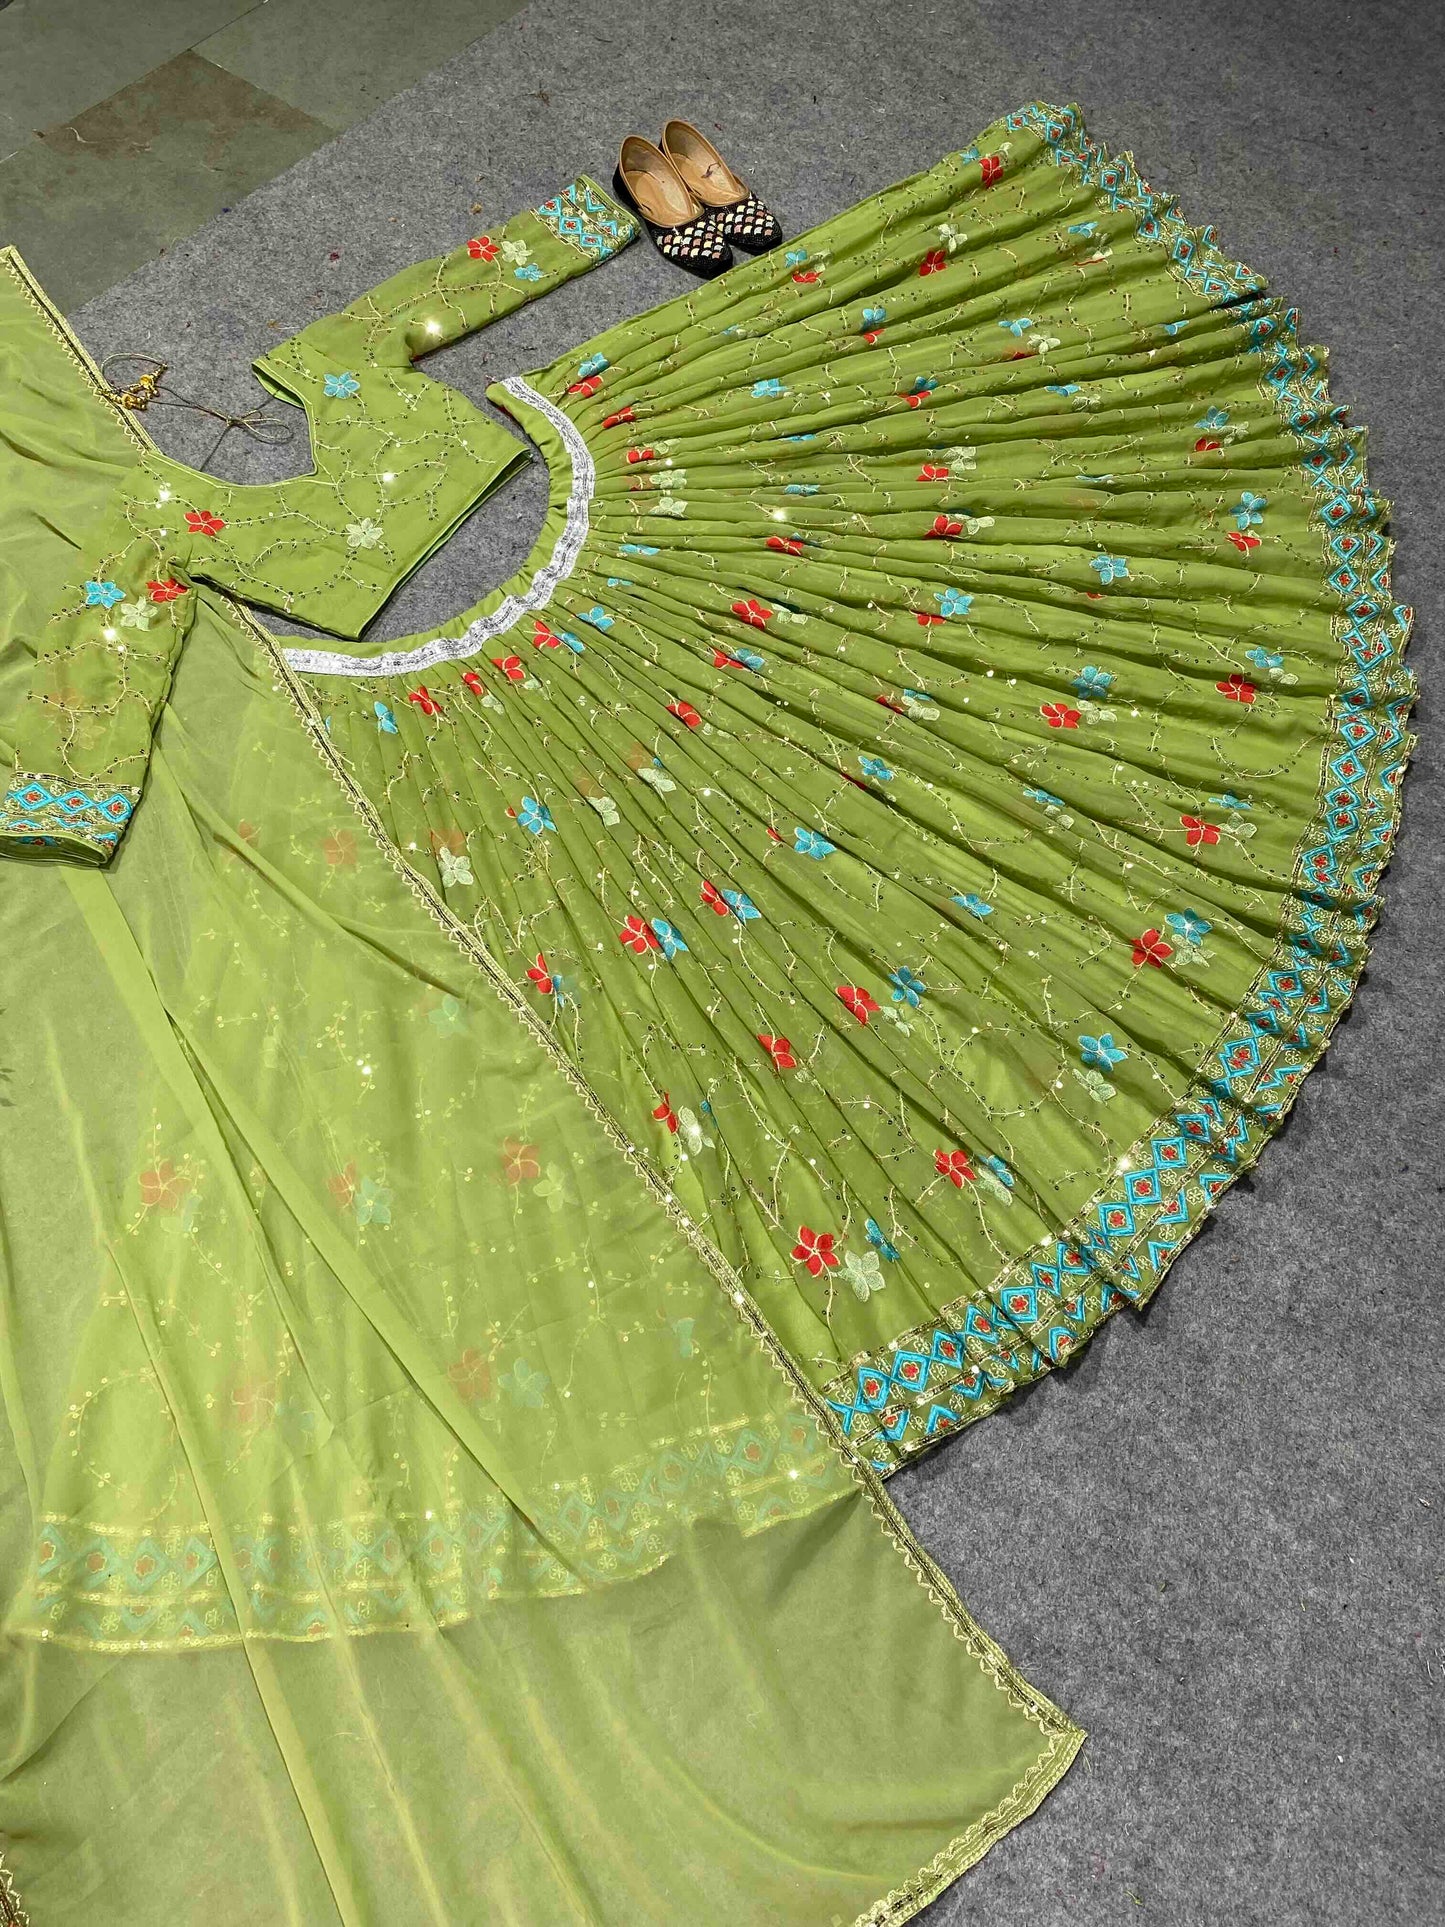 Shafnufab Women's Georgette Semi Stitched Lehenga Choli  In  Green  Colour SF218154